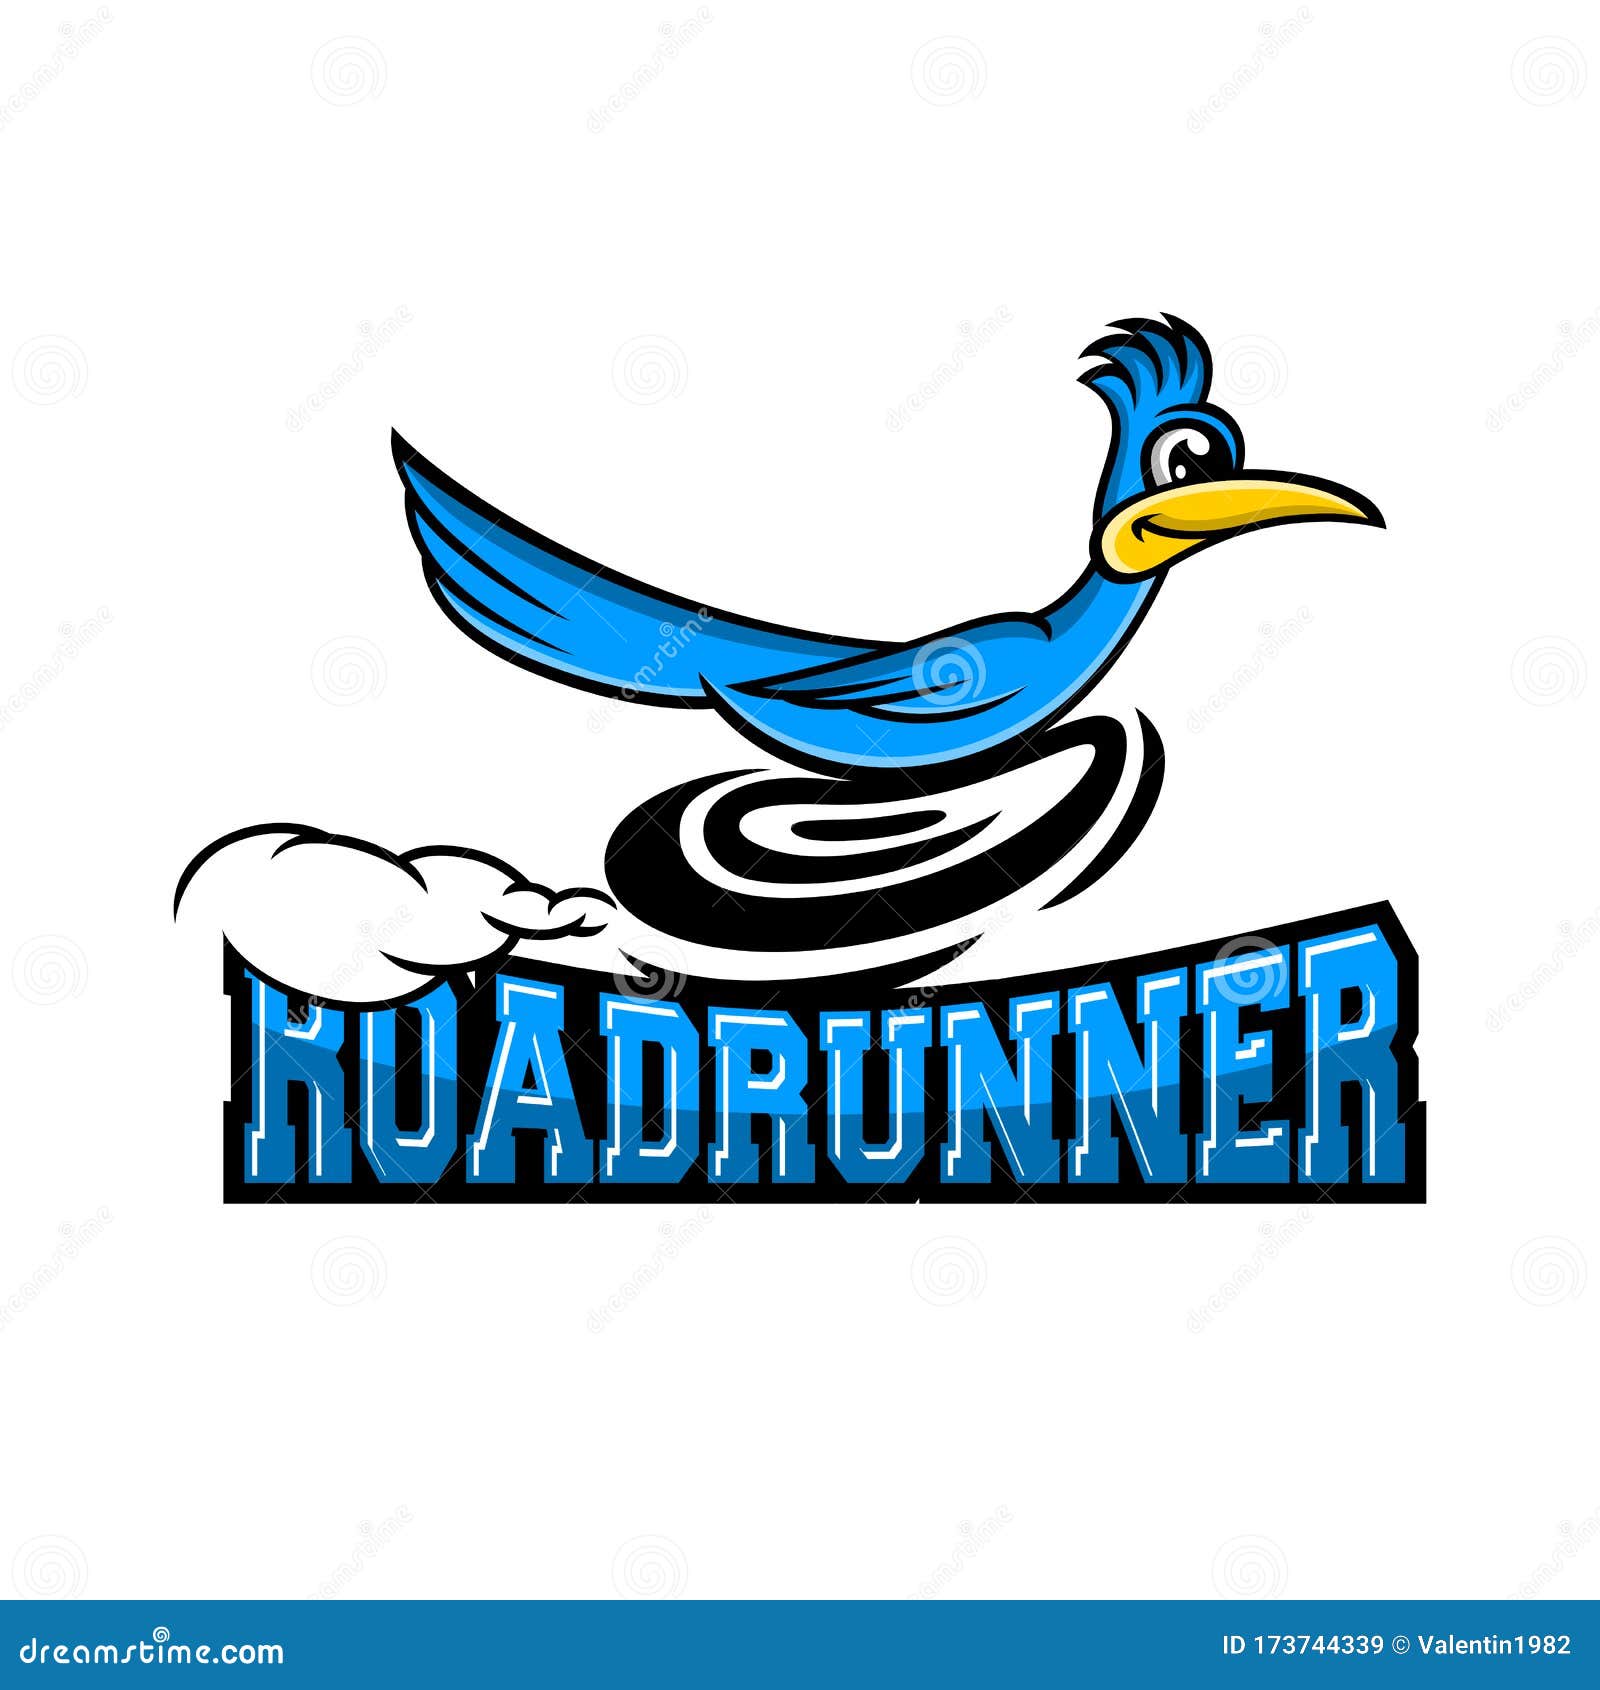 modern roadrunner bird logo.